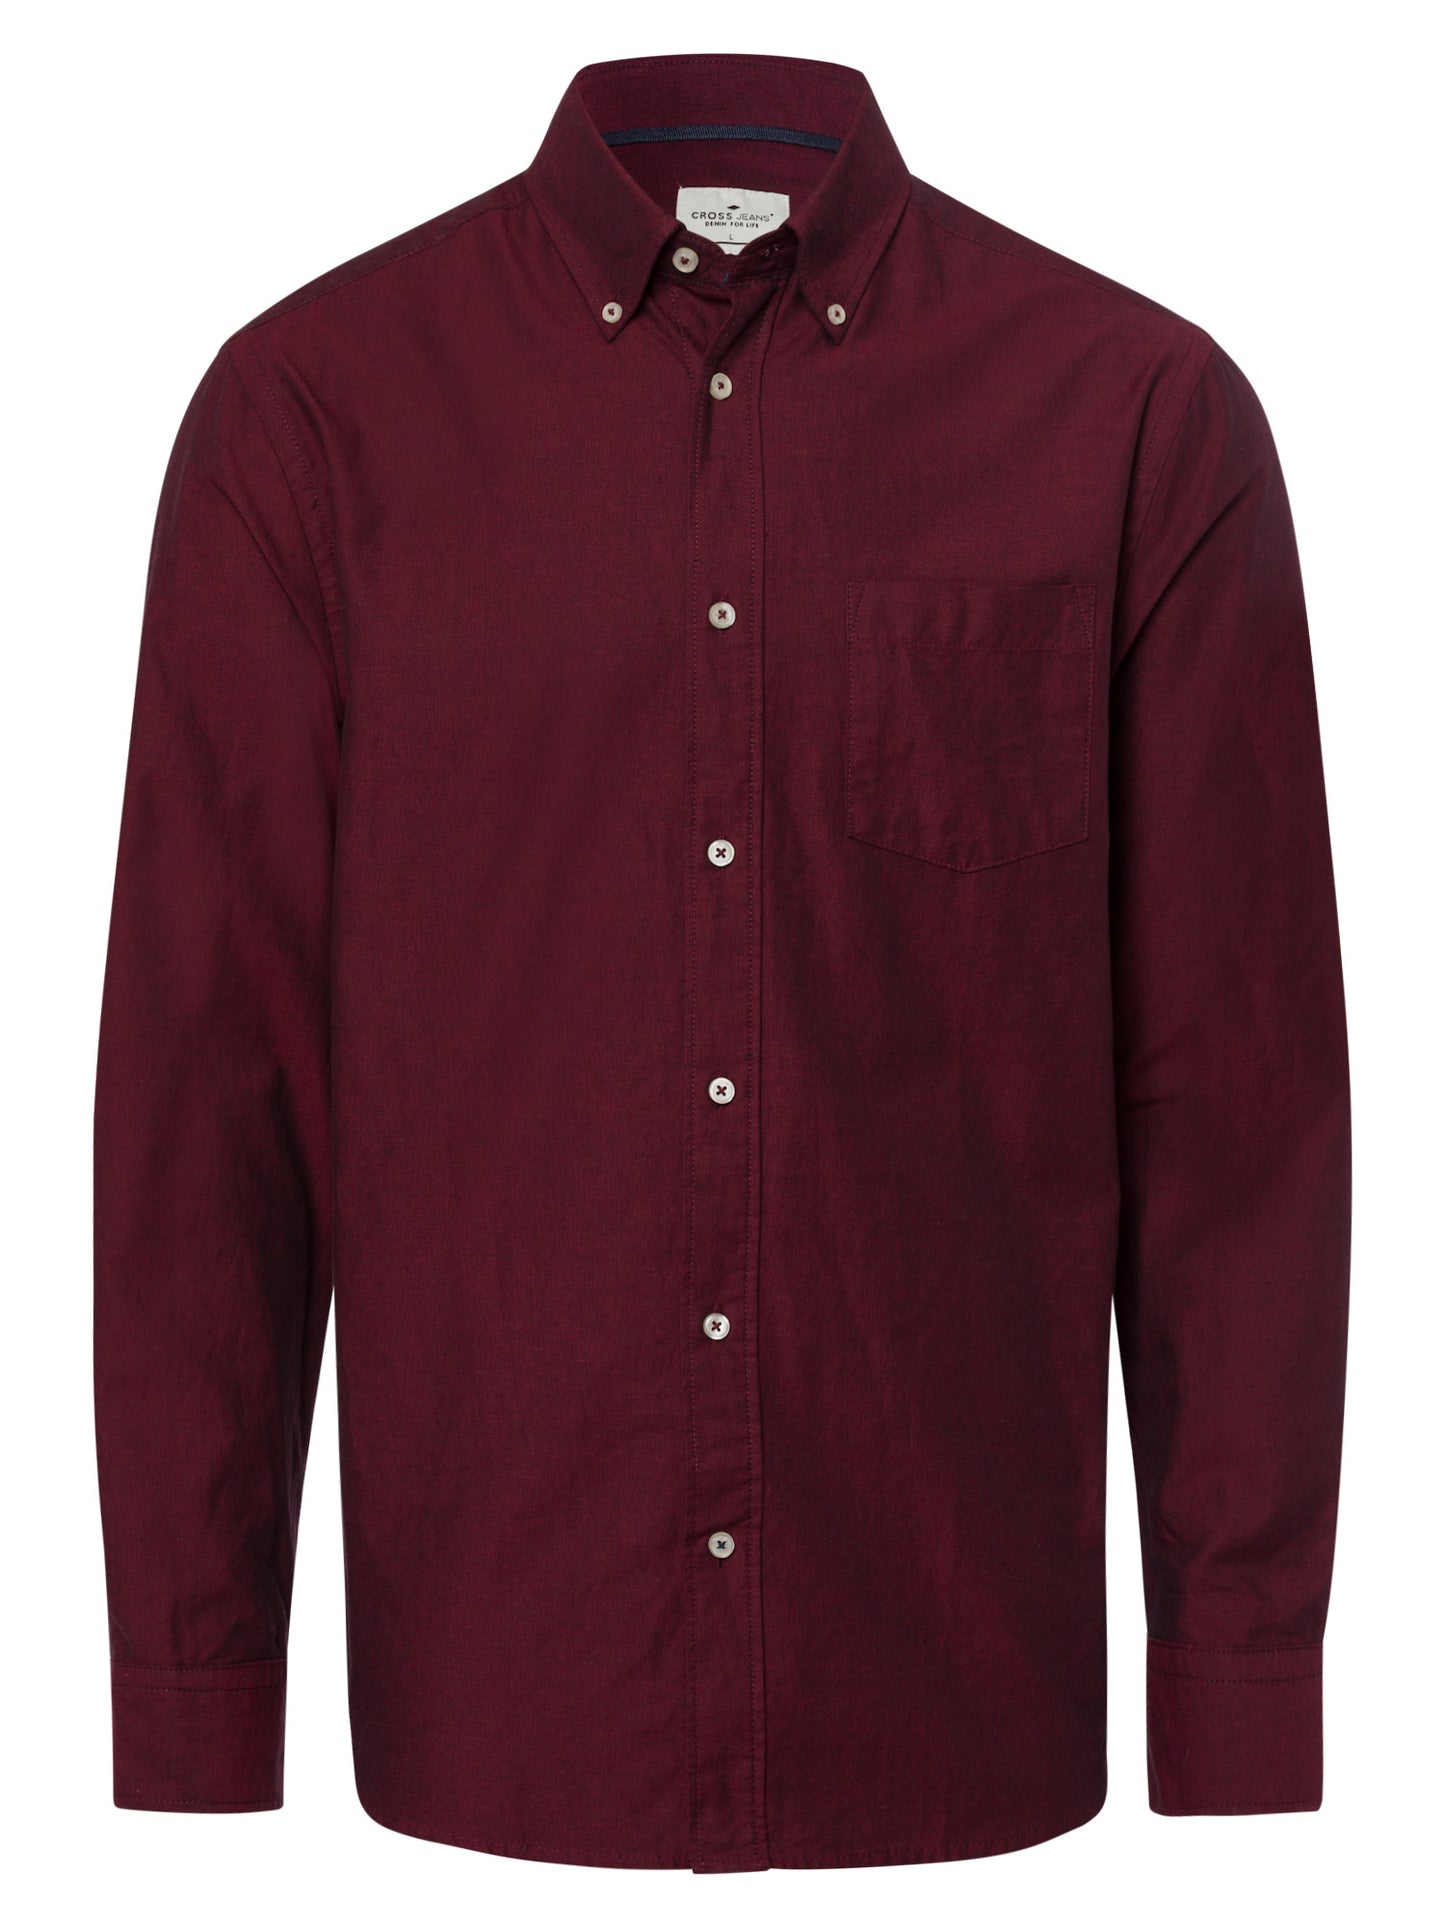 Men's regular long-sleeved shirt wine red